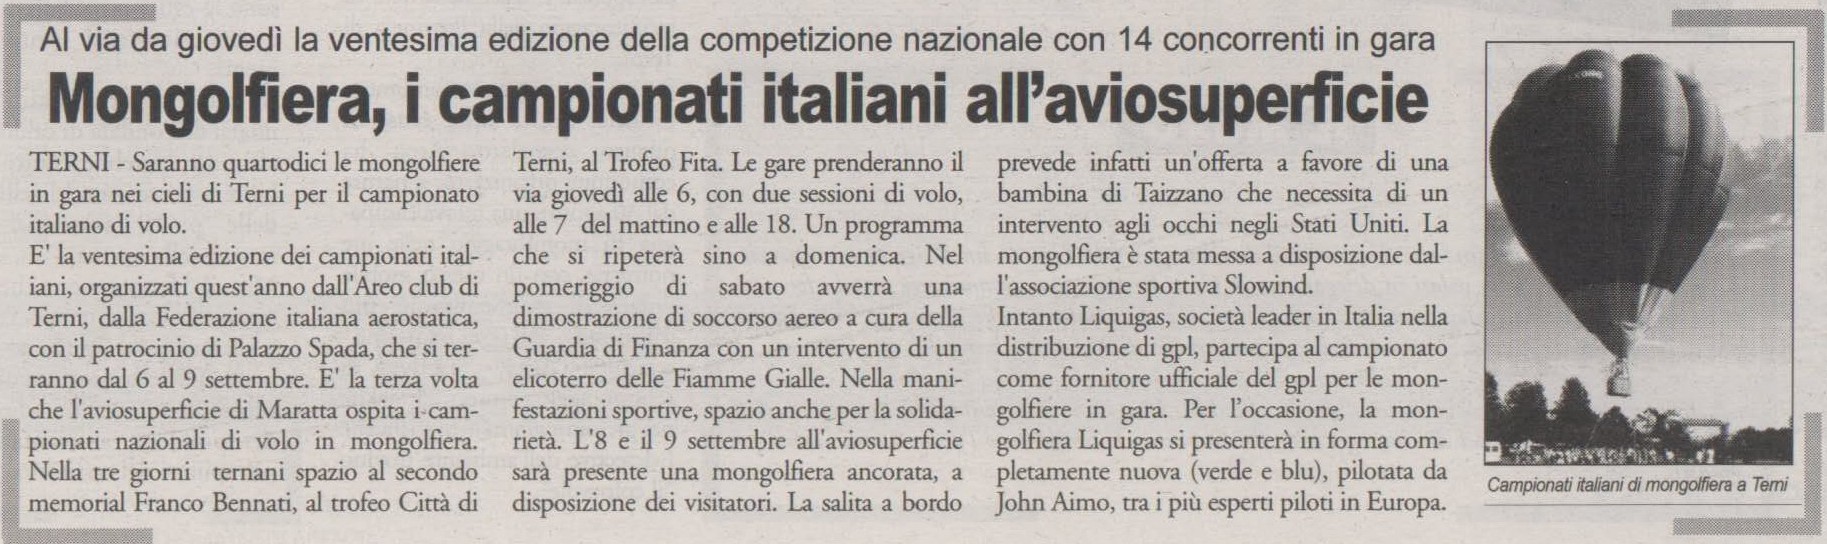 Il Giornale Dell'Umbria - 04 Settembre 2007